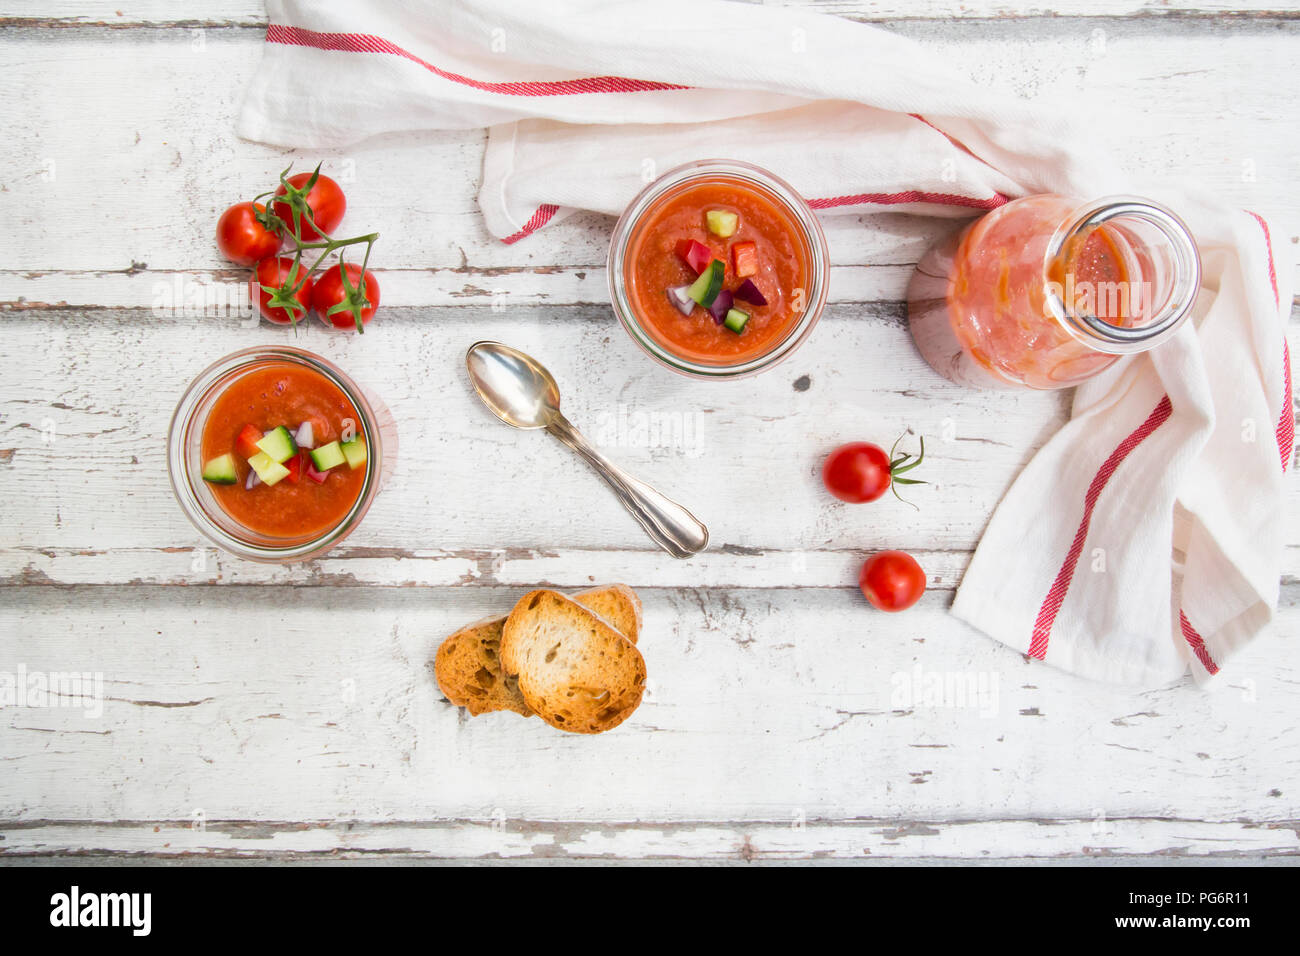 Homemade Gazpacho in glasses Stock Photo